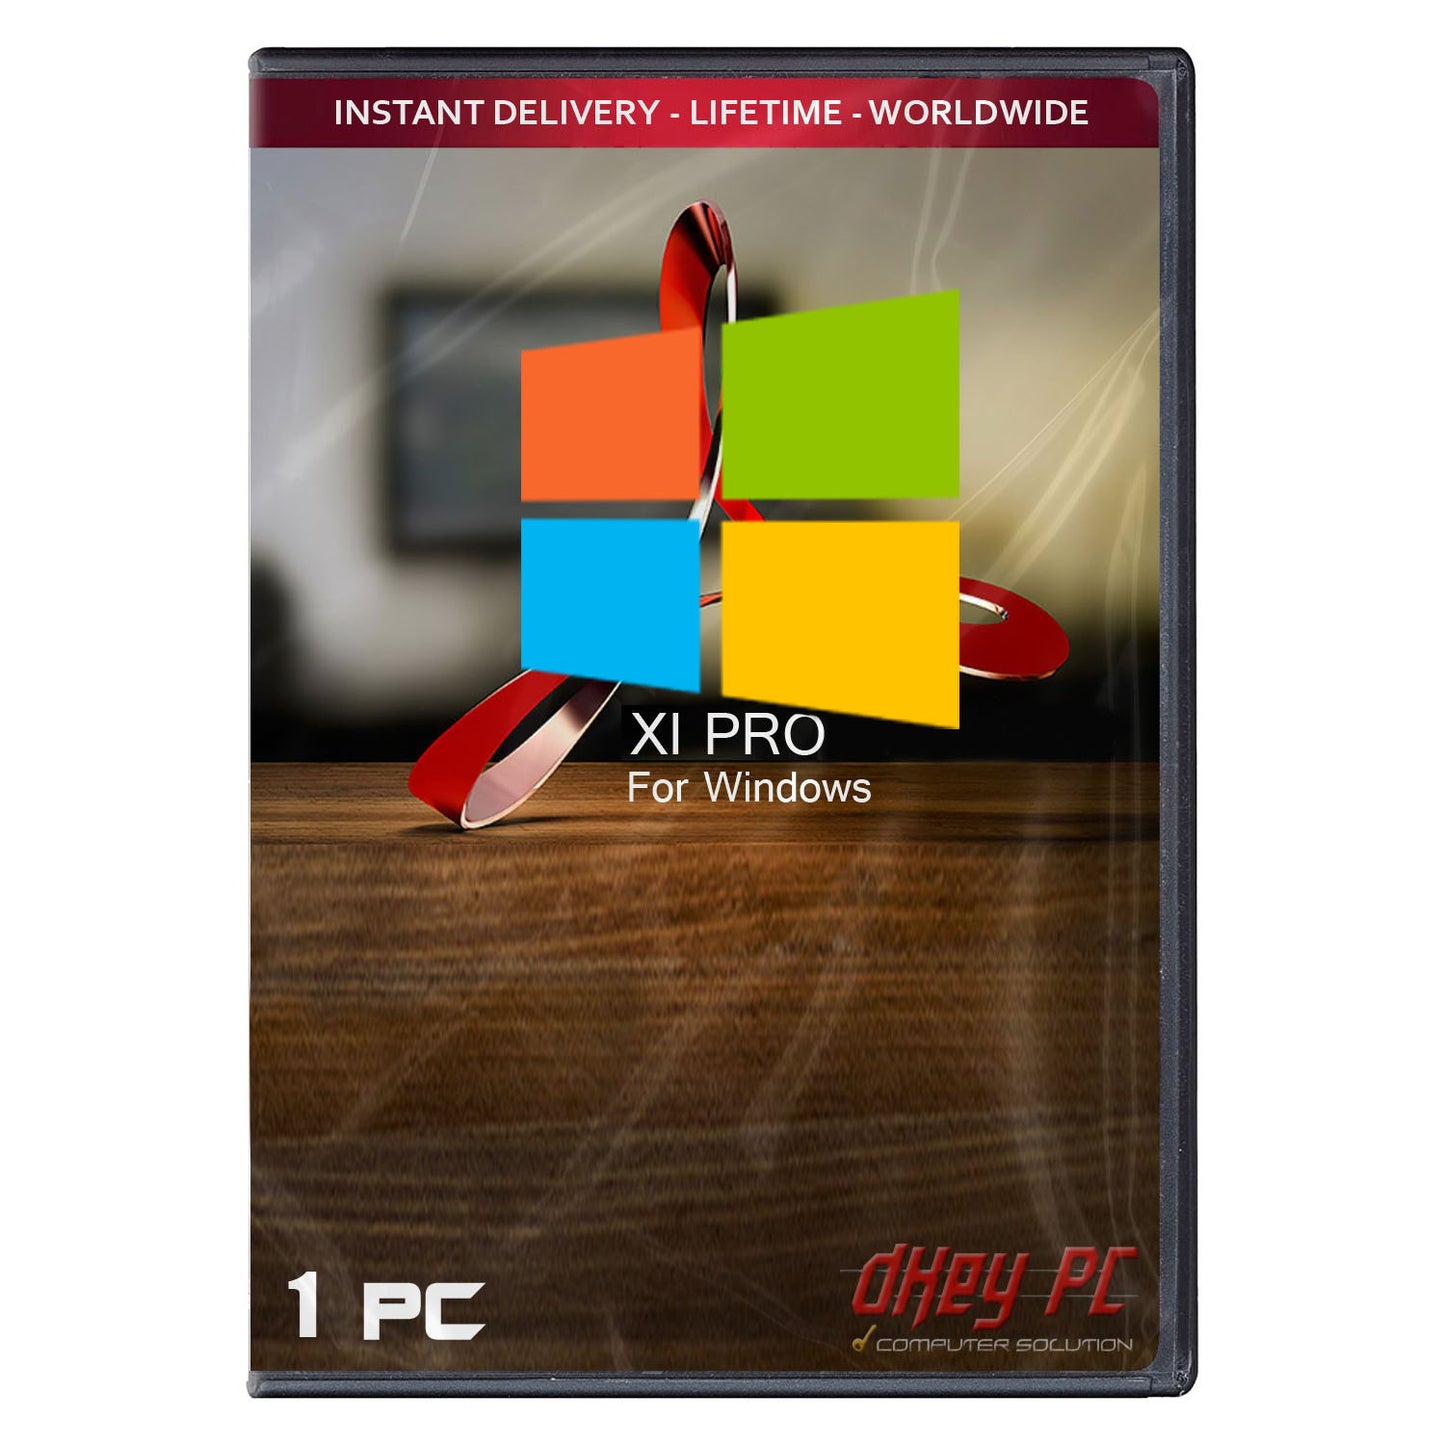 PDF XI Pro Key Number Full Version for Windows 1 PC Lifetime